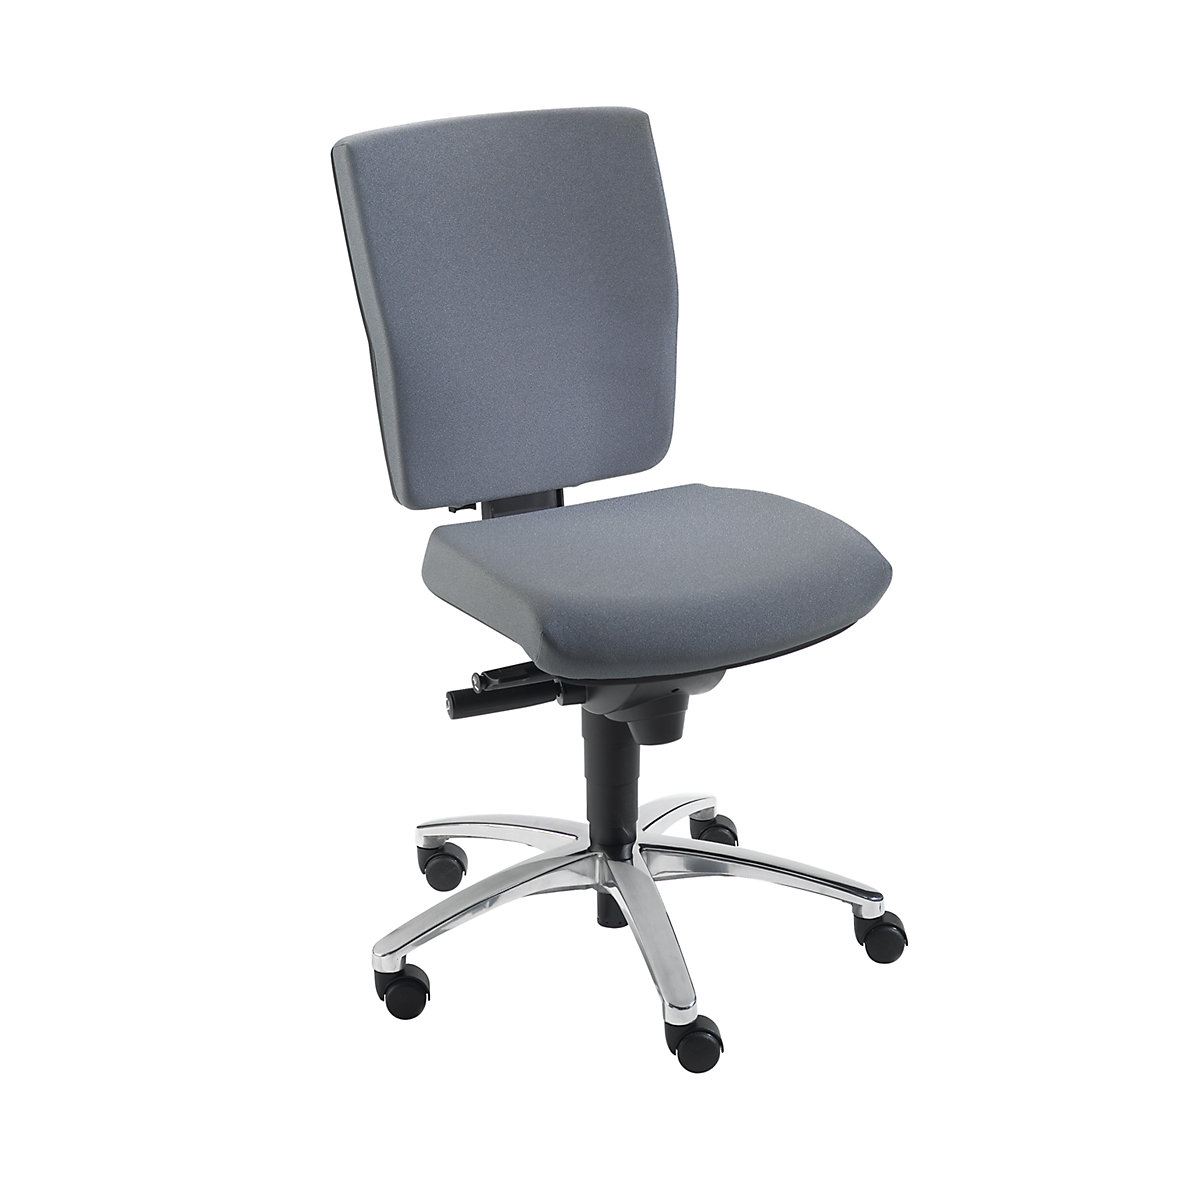 Udobna okretna stolica, sinkrona mehanika, pomično sjedalo – Dauphin, visina naslona za leđa 500 mm, u sivoj boji-7